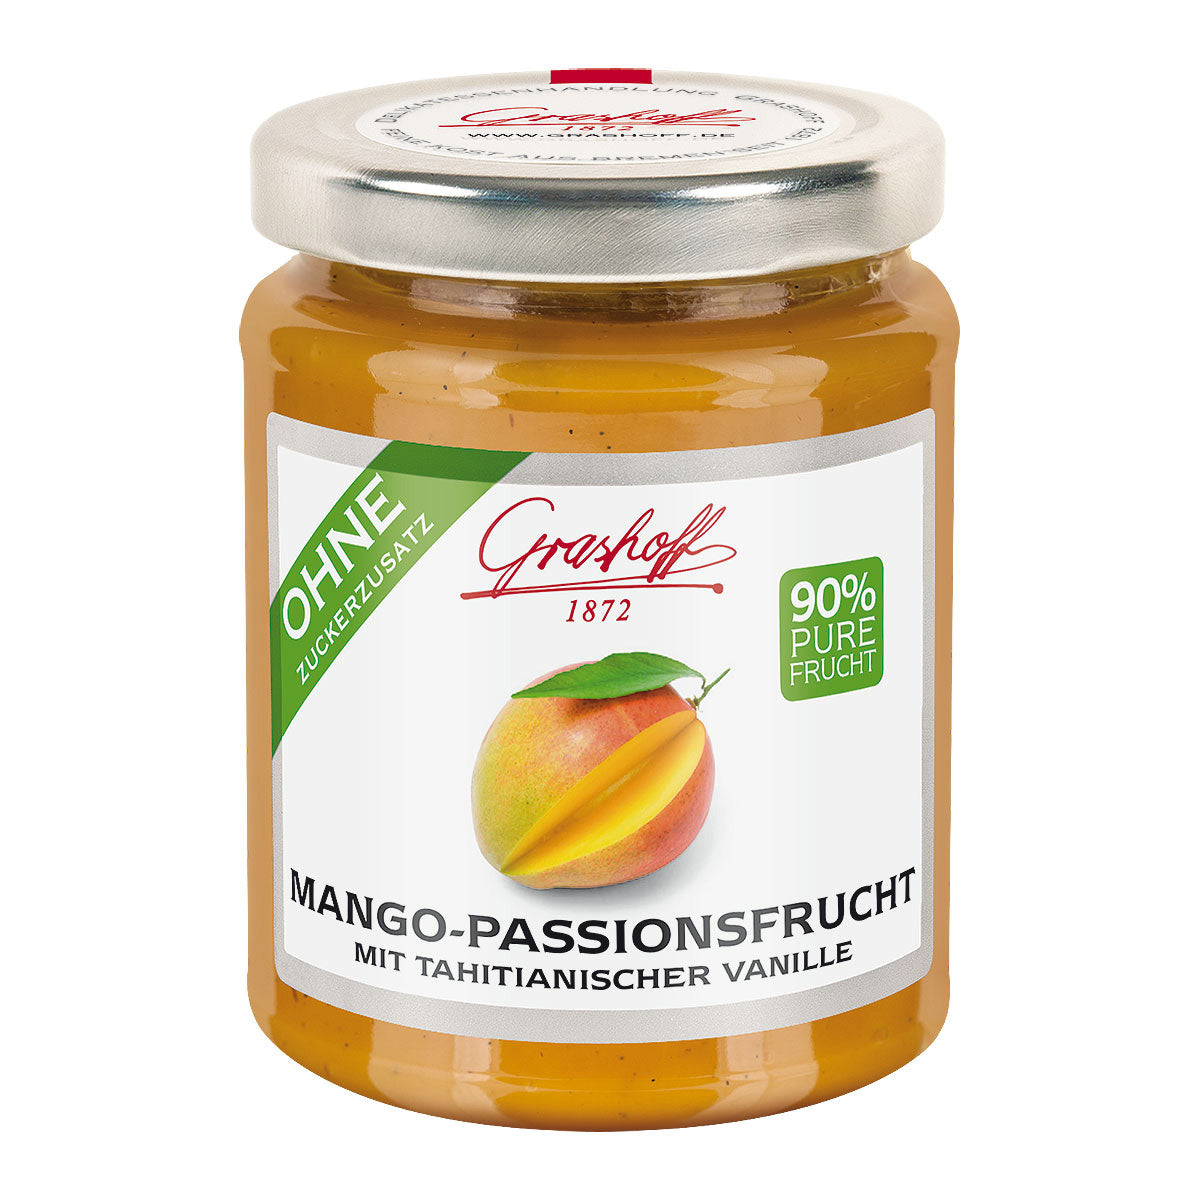 90% fruit - mango passion fruit